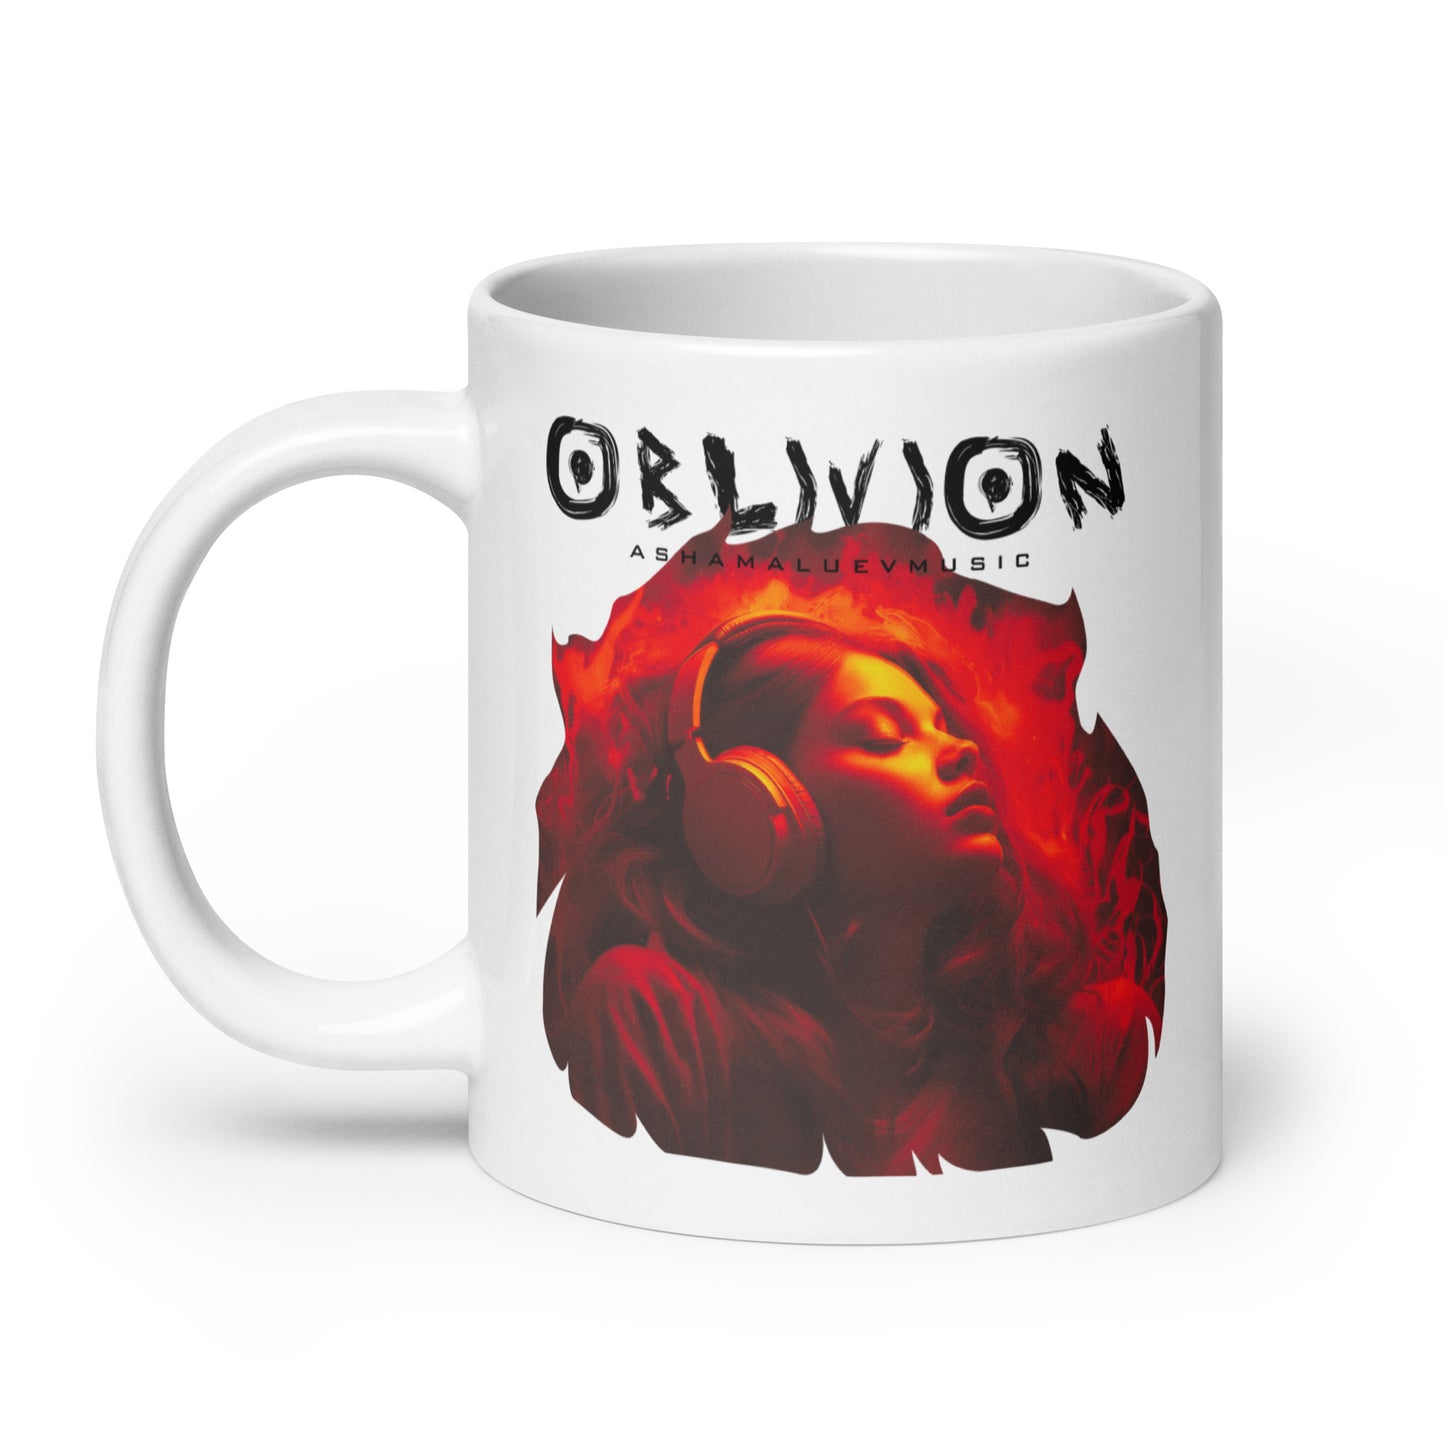 White Glossy Mug "Oblivion" II